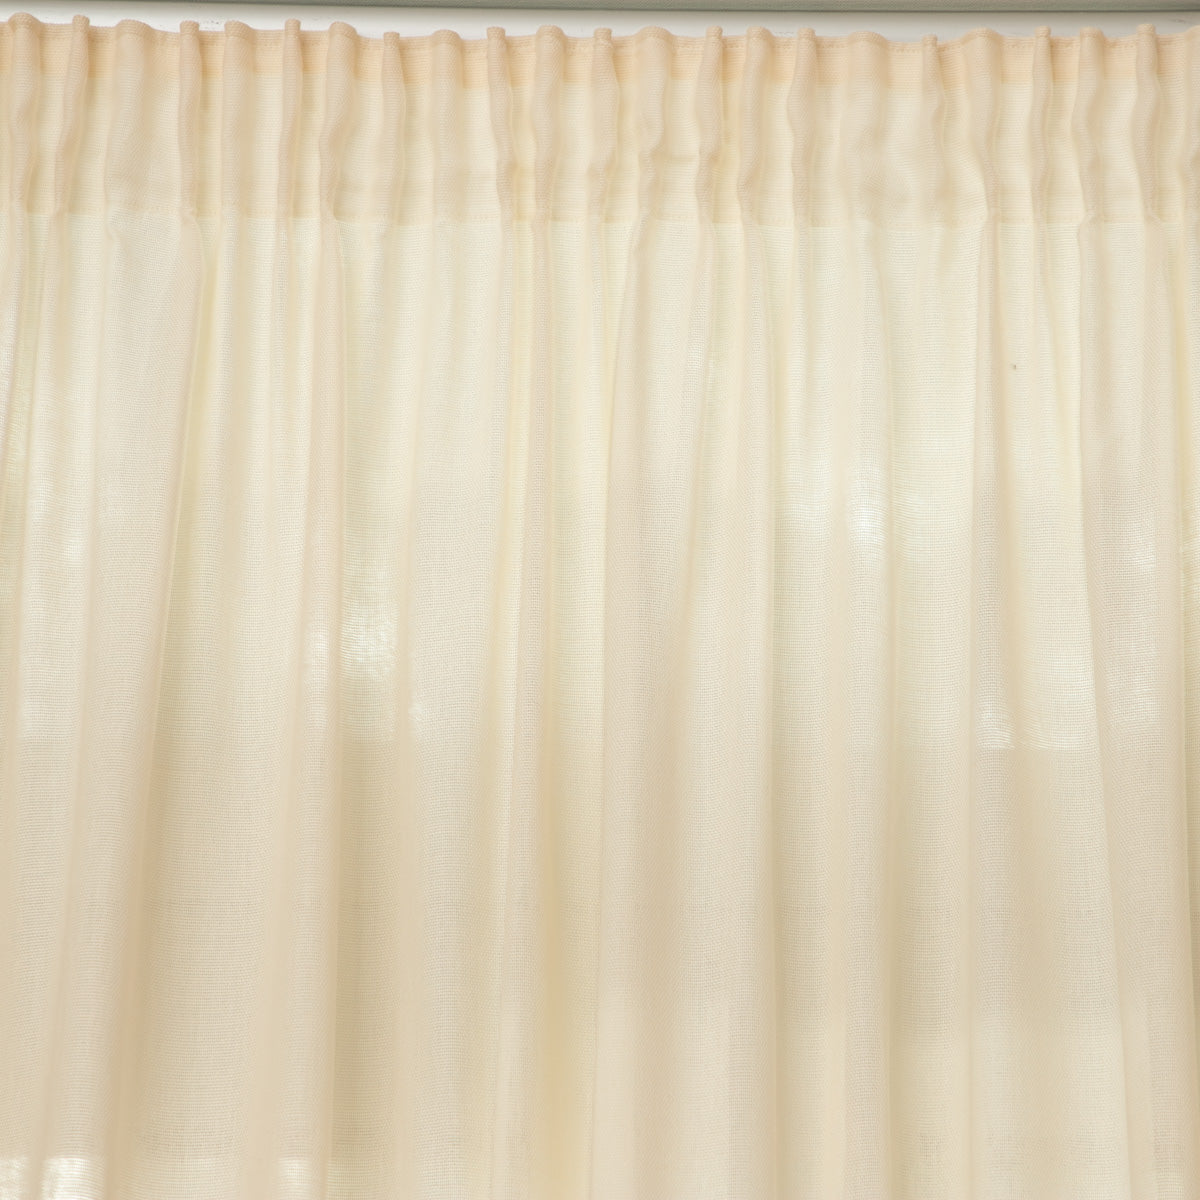 Rideau Bakea Terracotta en tissage Jacquard 100% coton de qualité